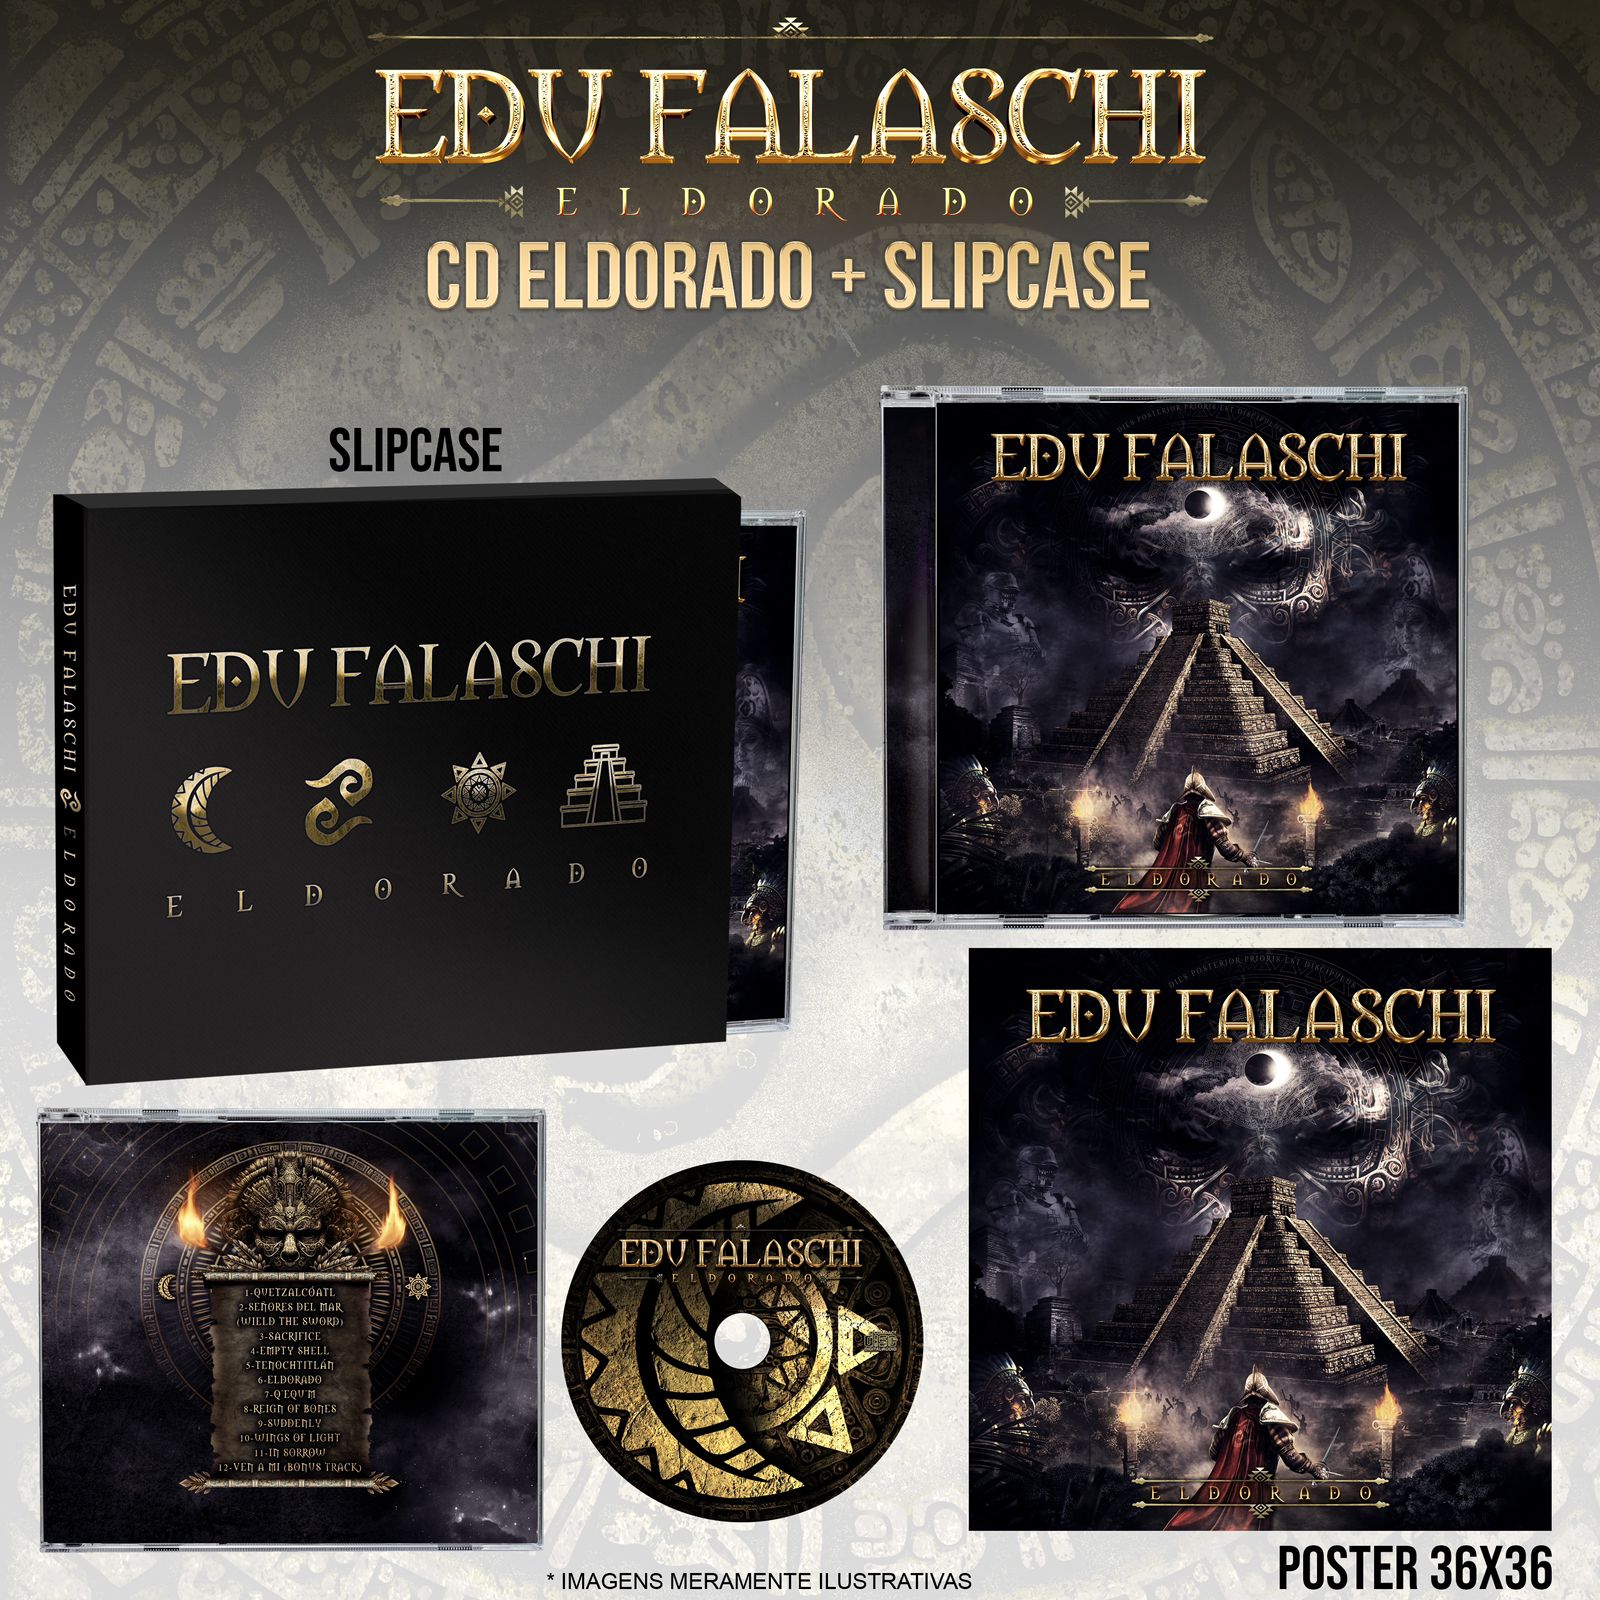 Edu Falaschi – Sacrifice Lyrics